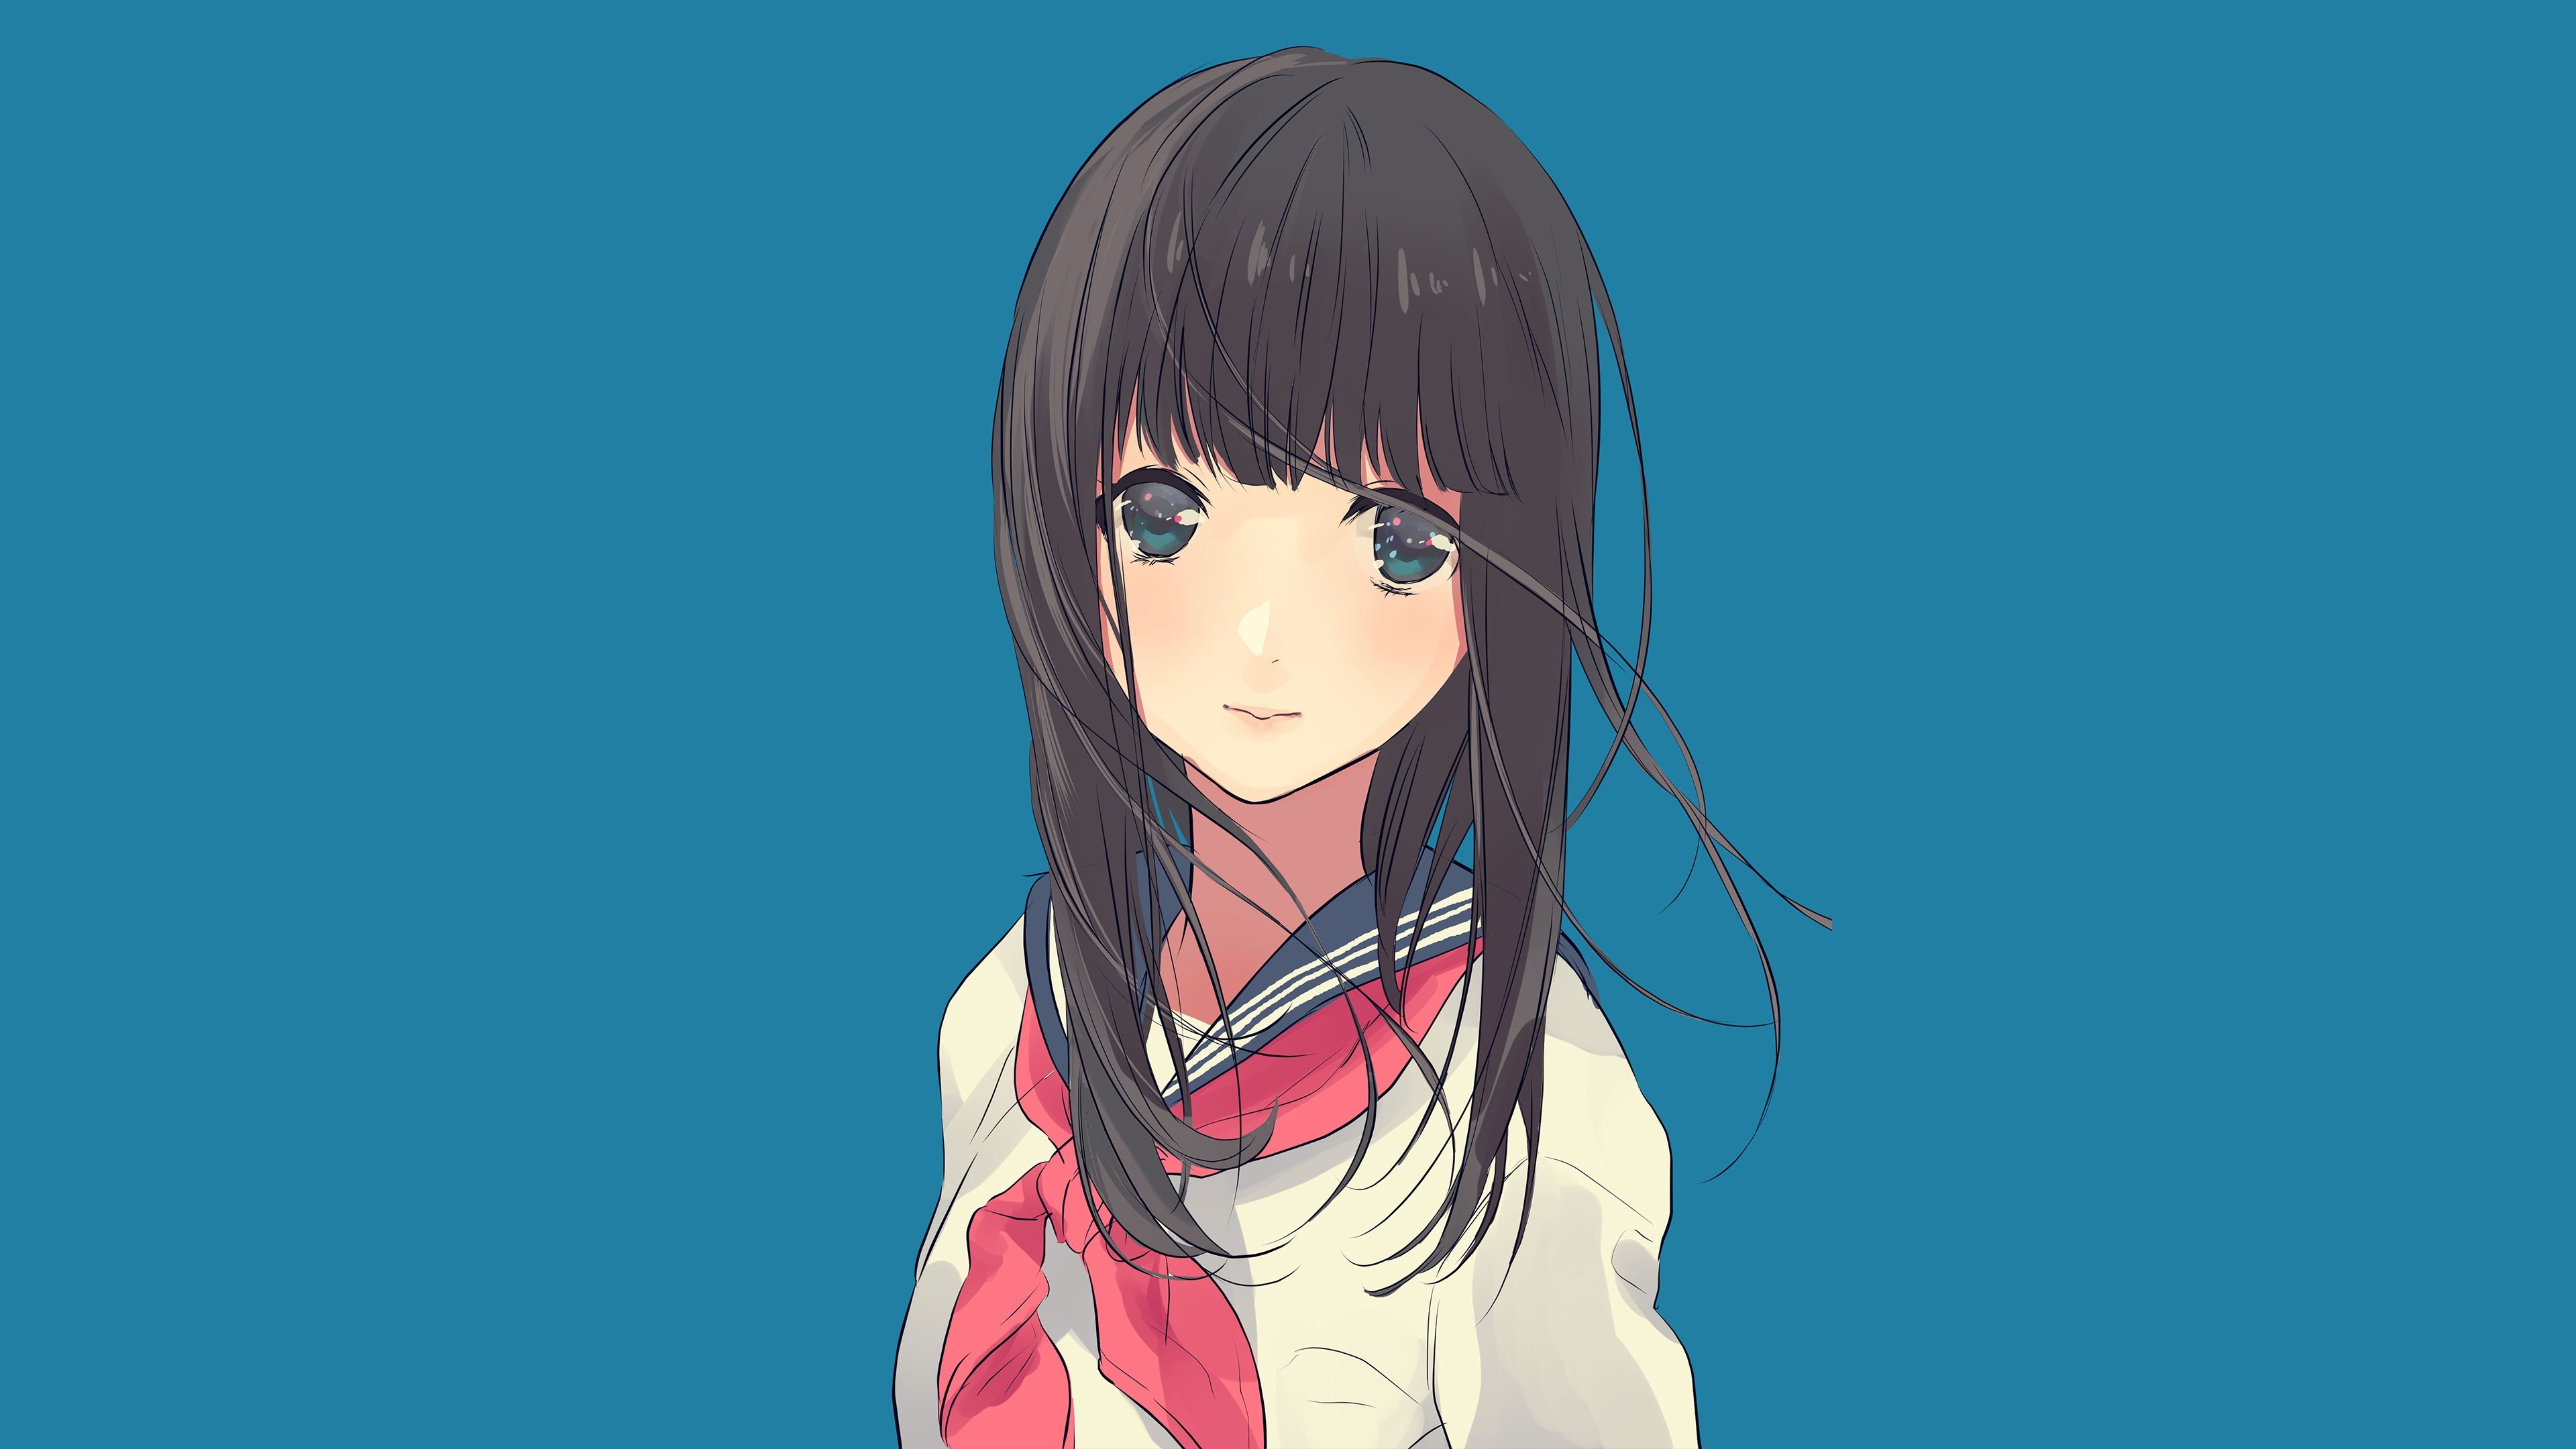 Download Cute, anime girl, school dress, original, art wallpaper, 3840x 4K UHD 16: Widescreen